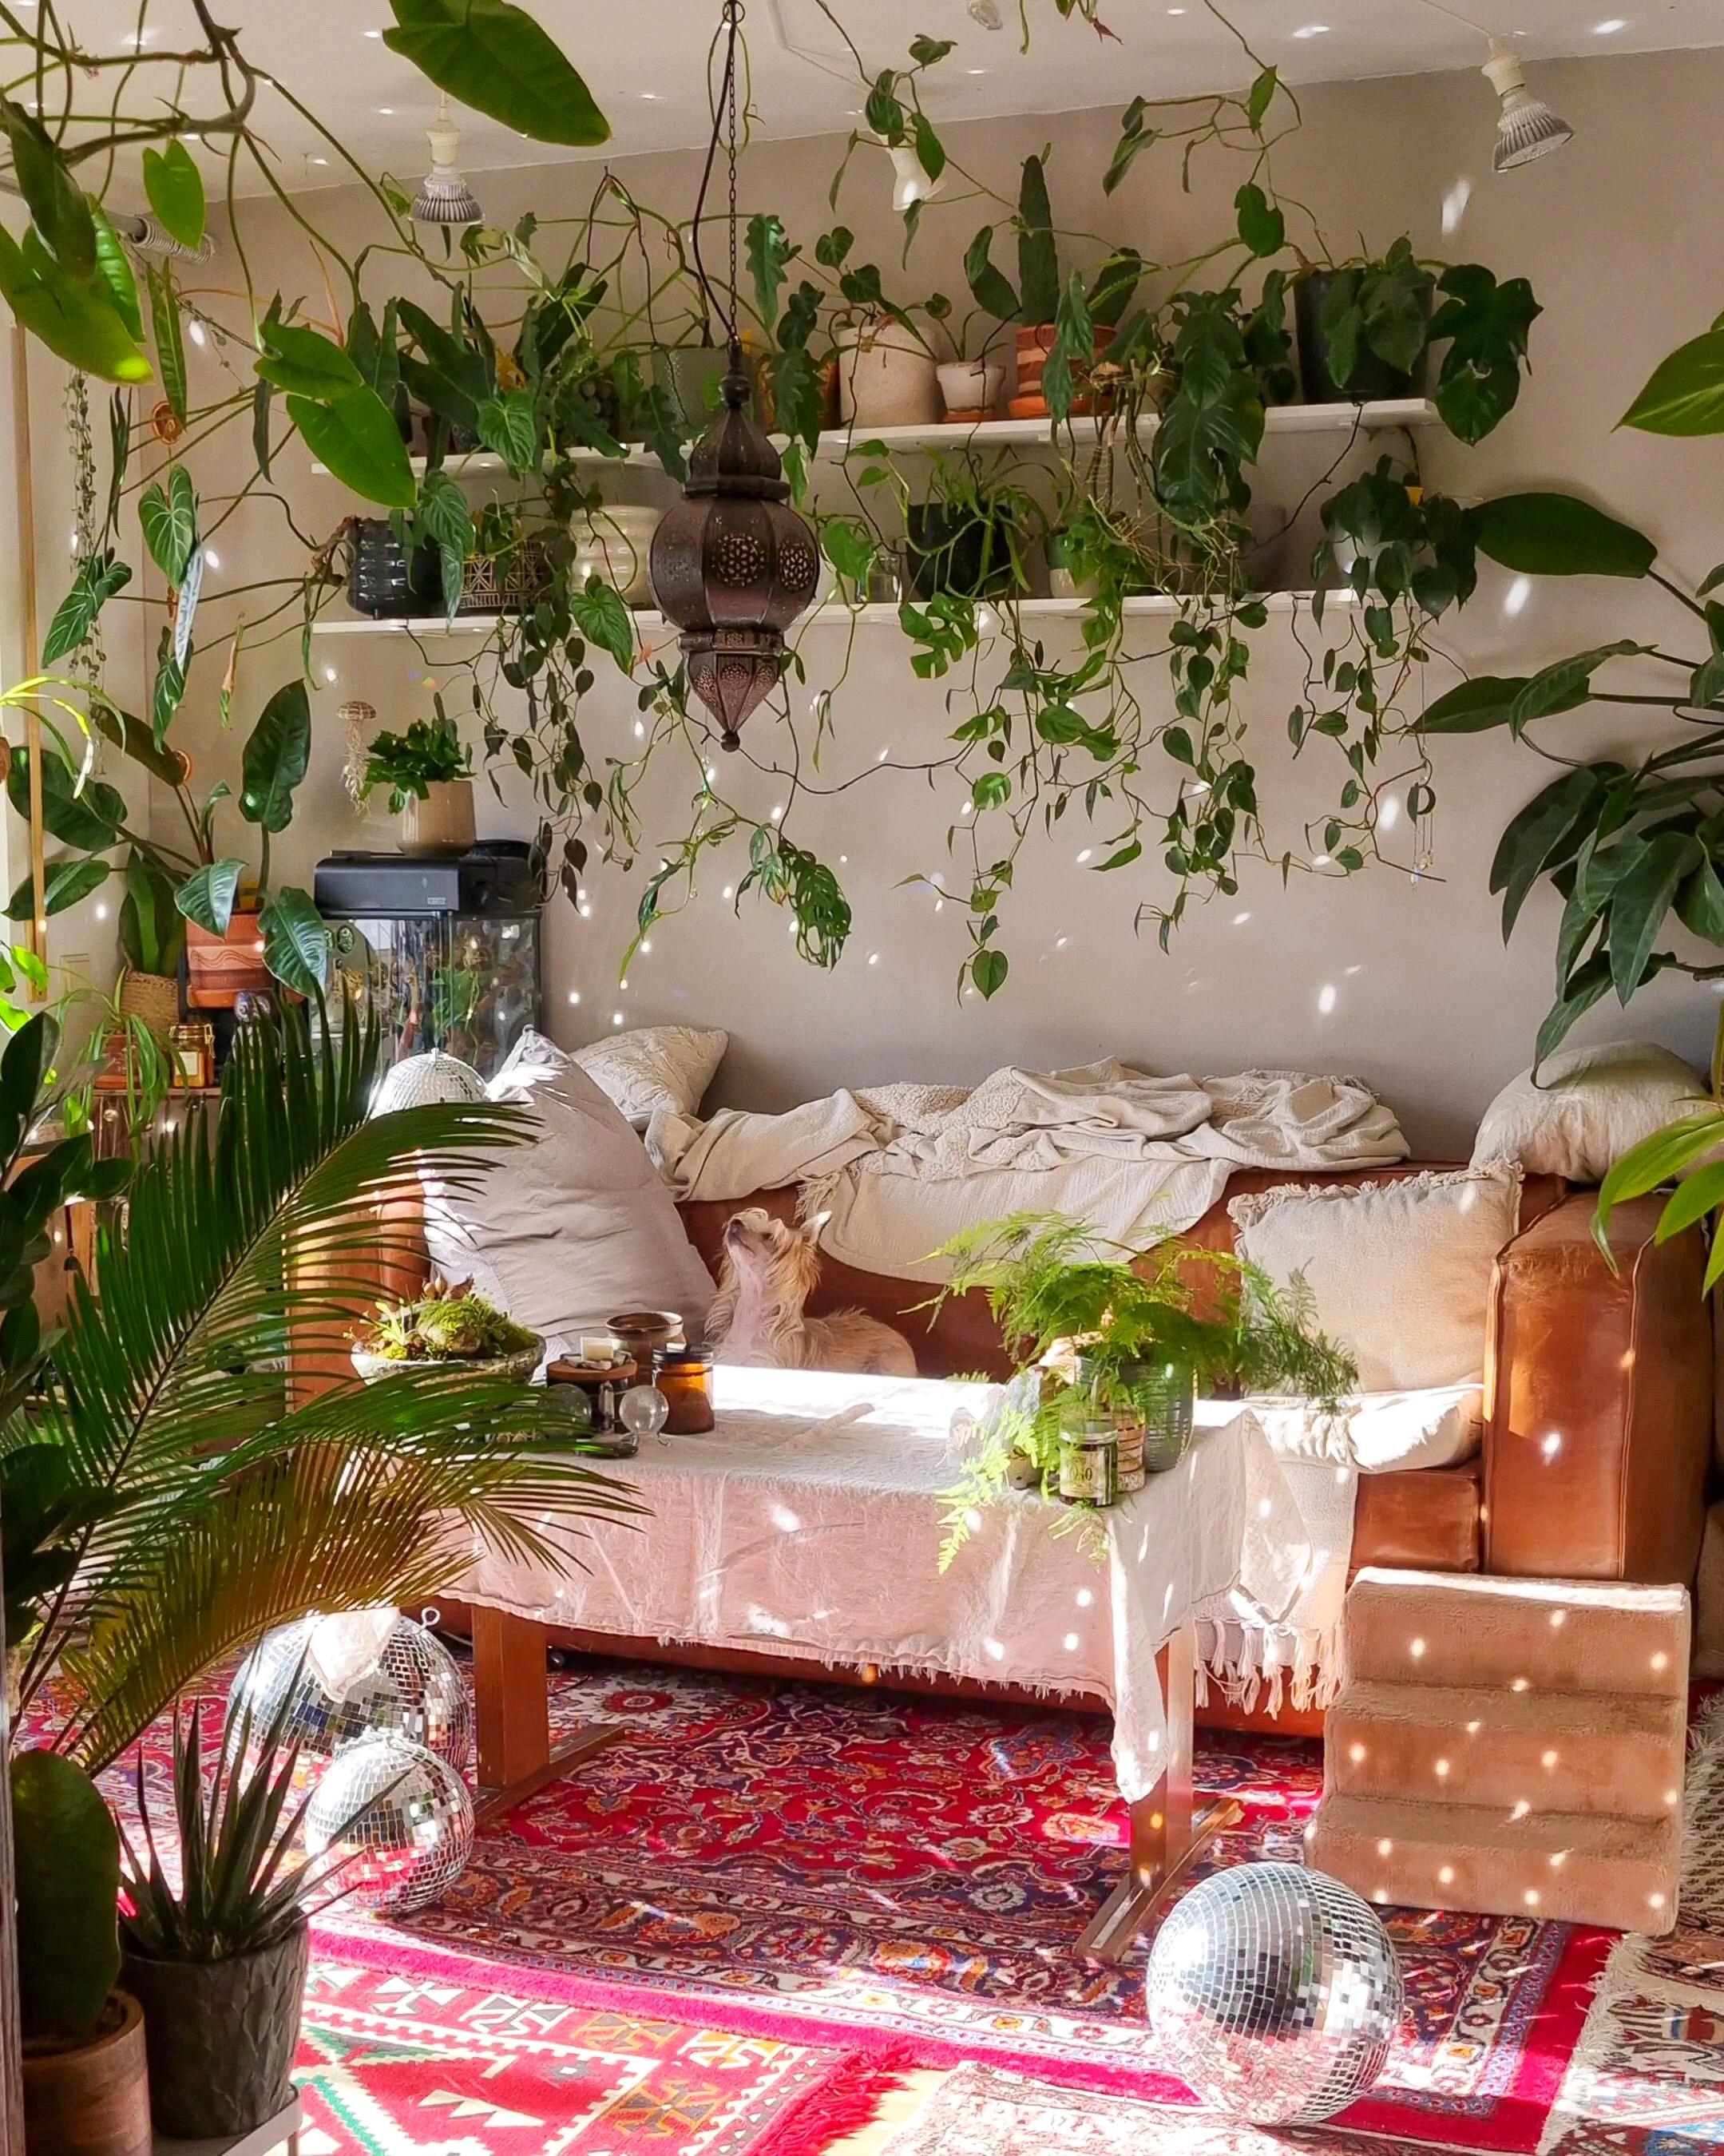 Schönes Wochenende #Wohnzimmer #Pflanzen #Regal #Couch #Sofa #Teppich #boho #hippie #hygge #deko #dekoidee #Sonne #Disco